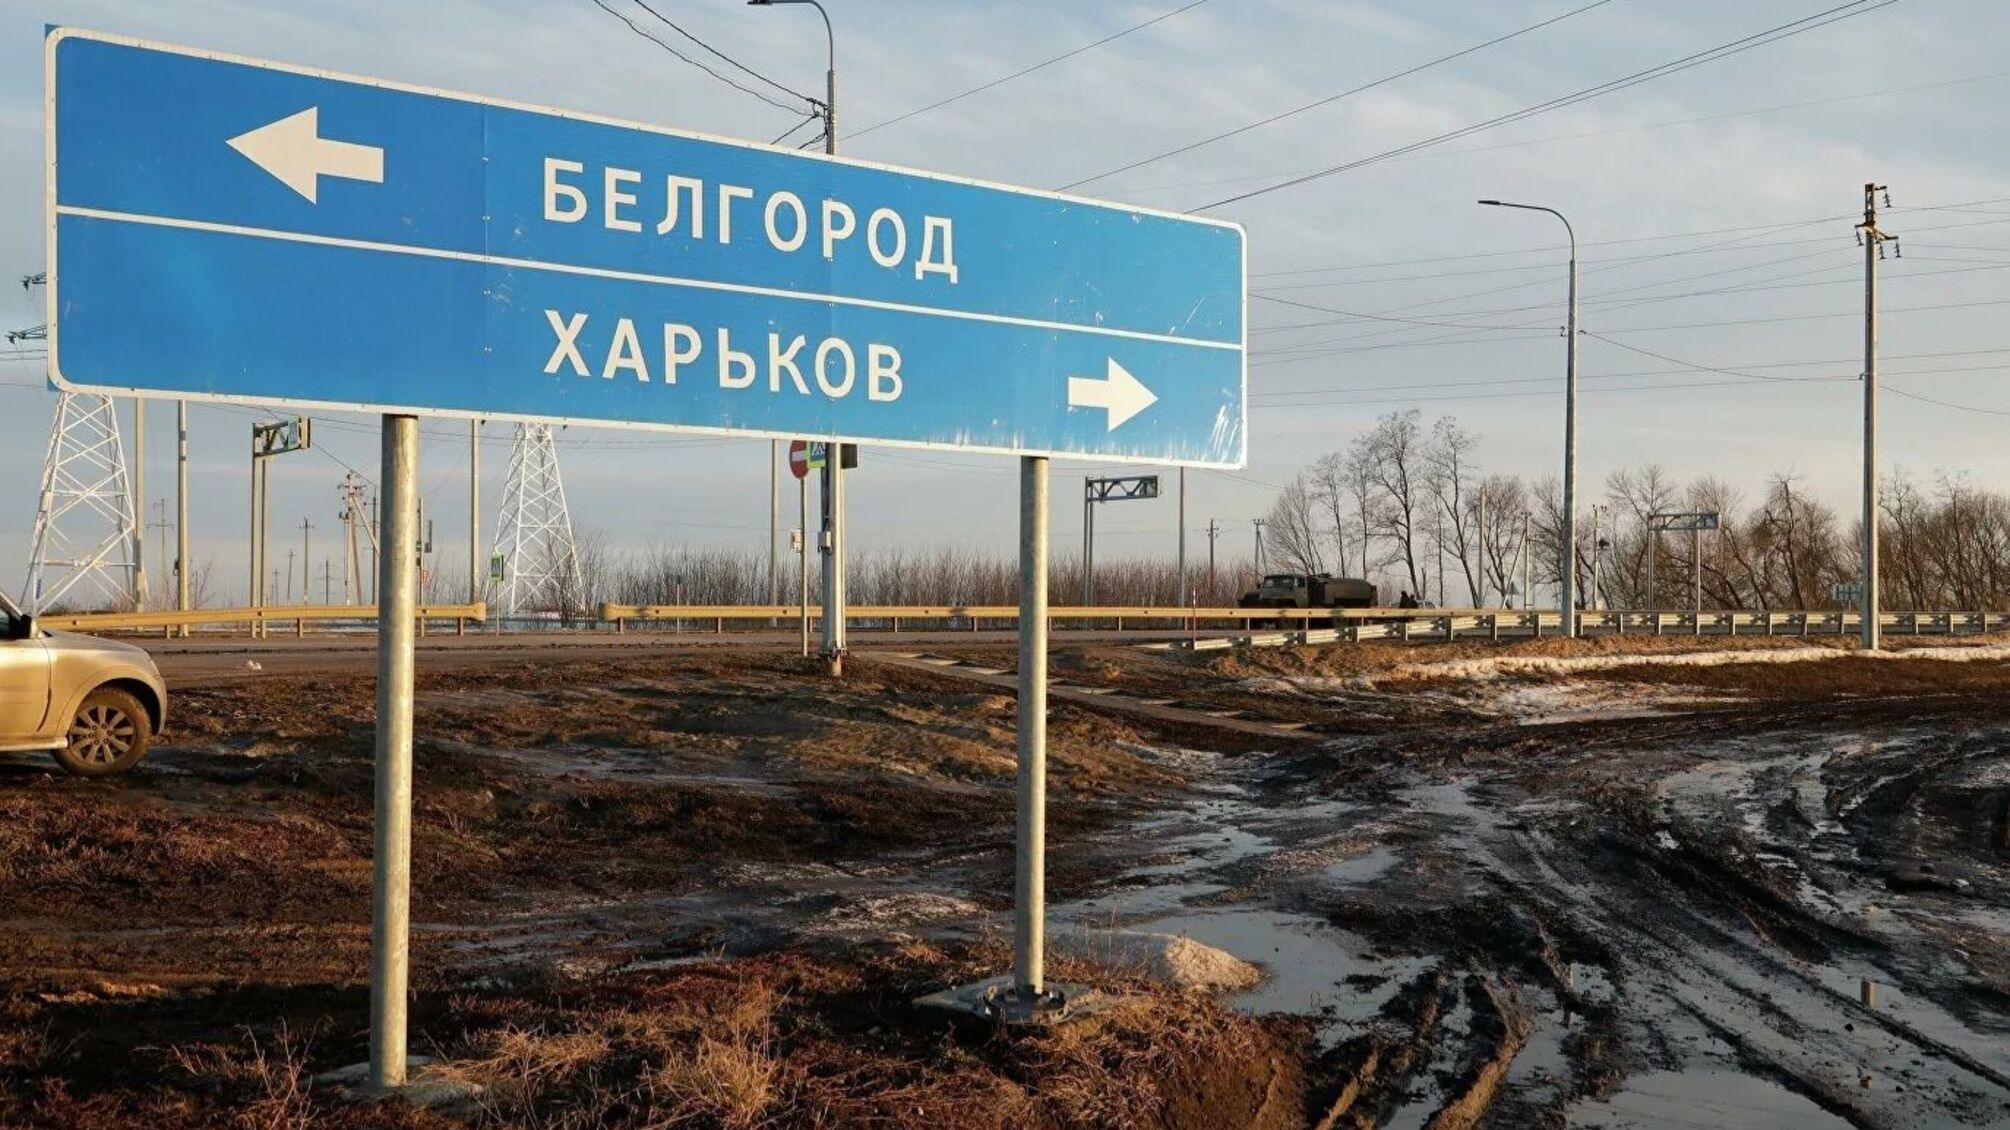 МВС України пояснило, навіщо росіяни бомбили Бєлгород